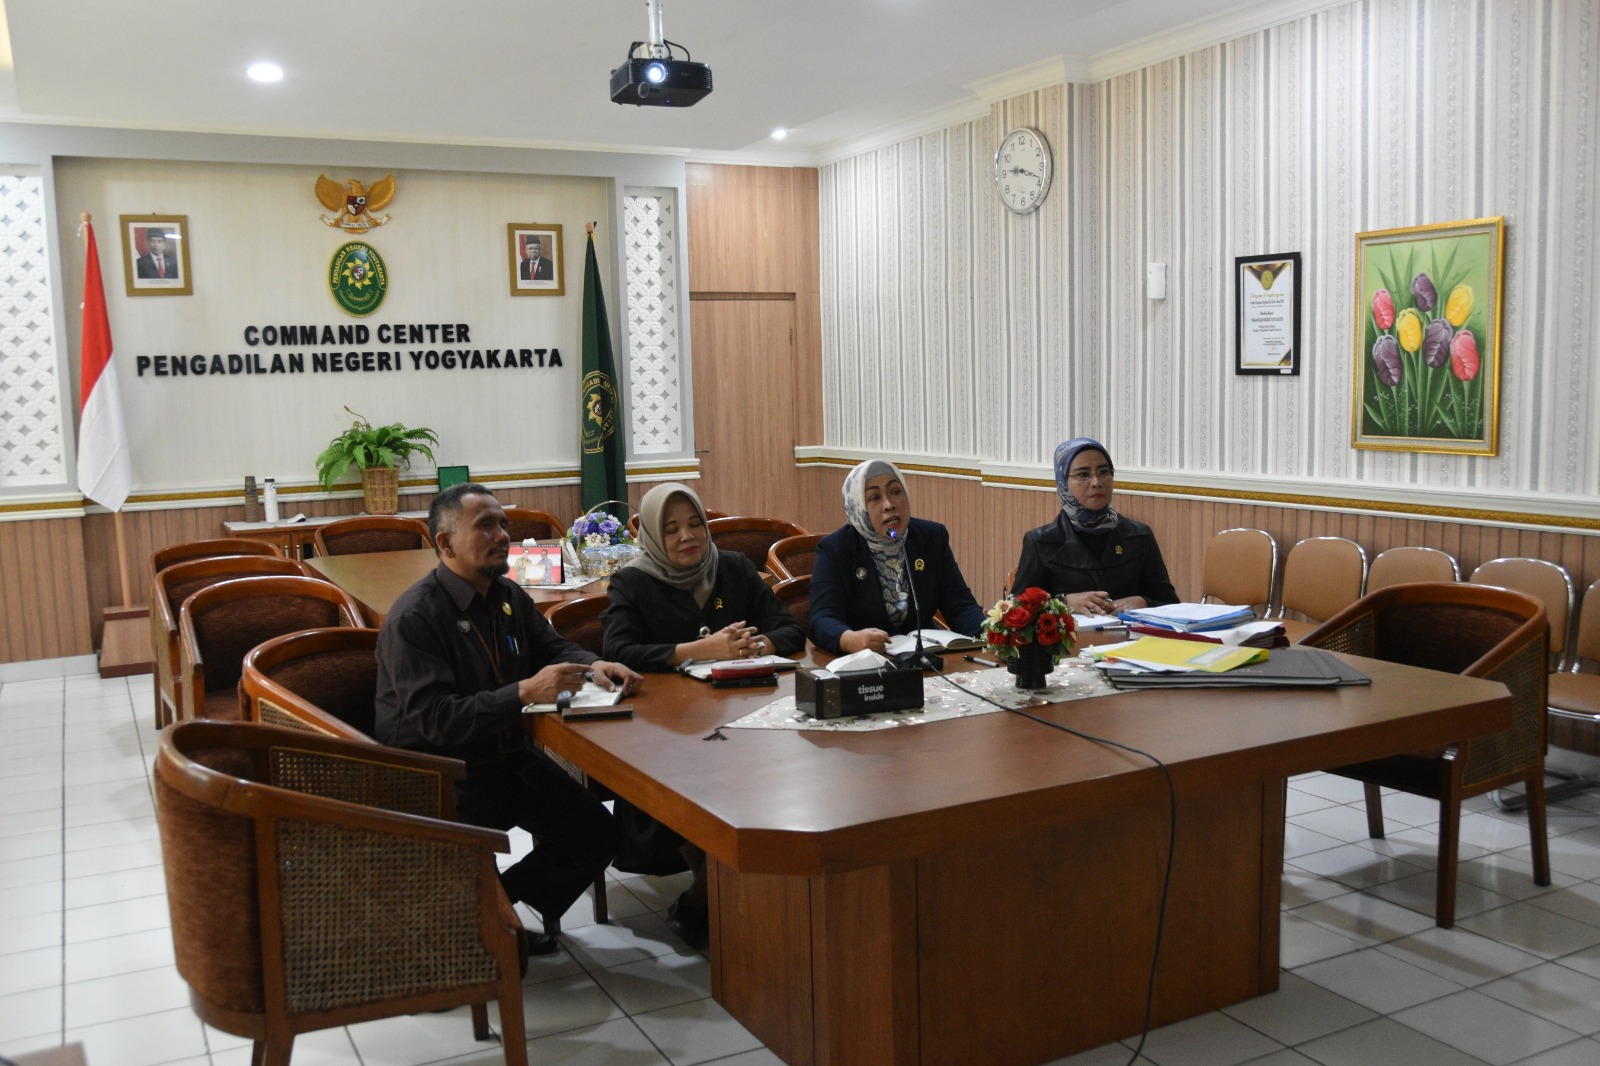 Pengadilan Negeri Yogyakarta Mengikuti Pengawasan Daerah secara Daring oleh Pengadilan Tinggi Yogyakarta